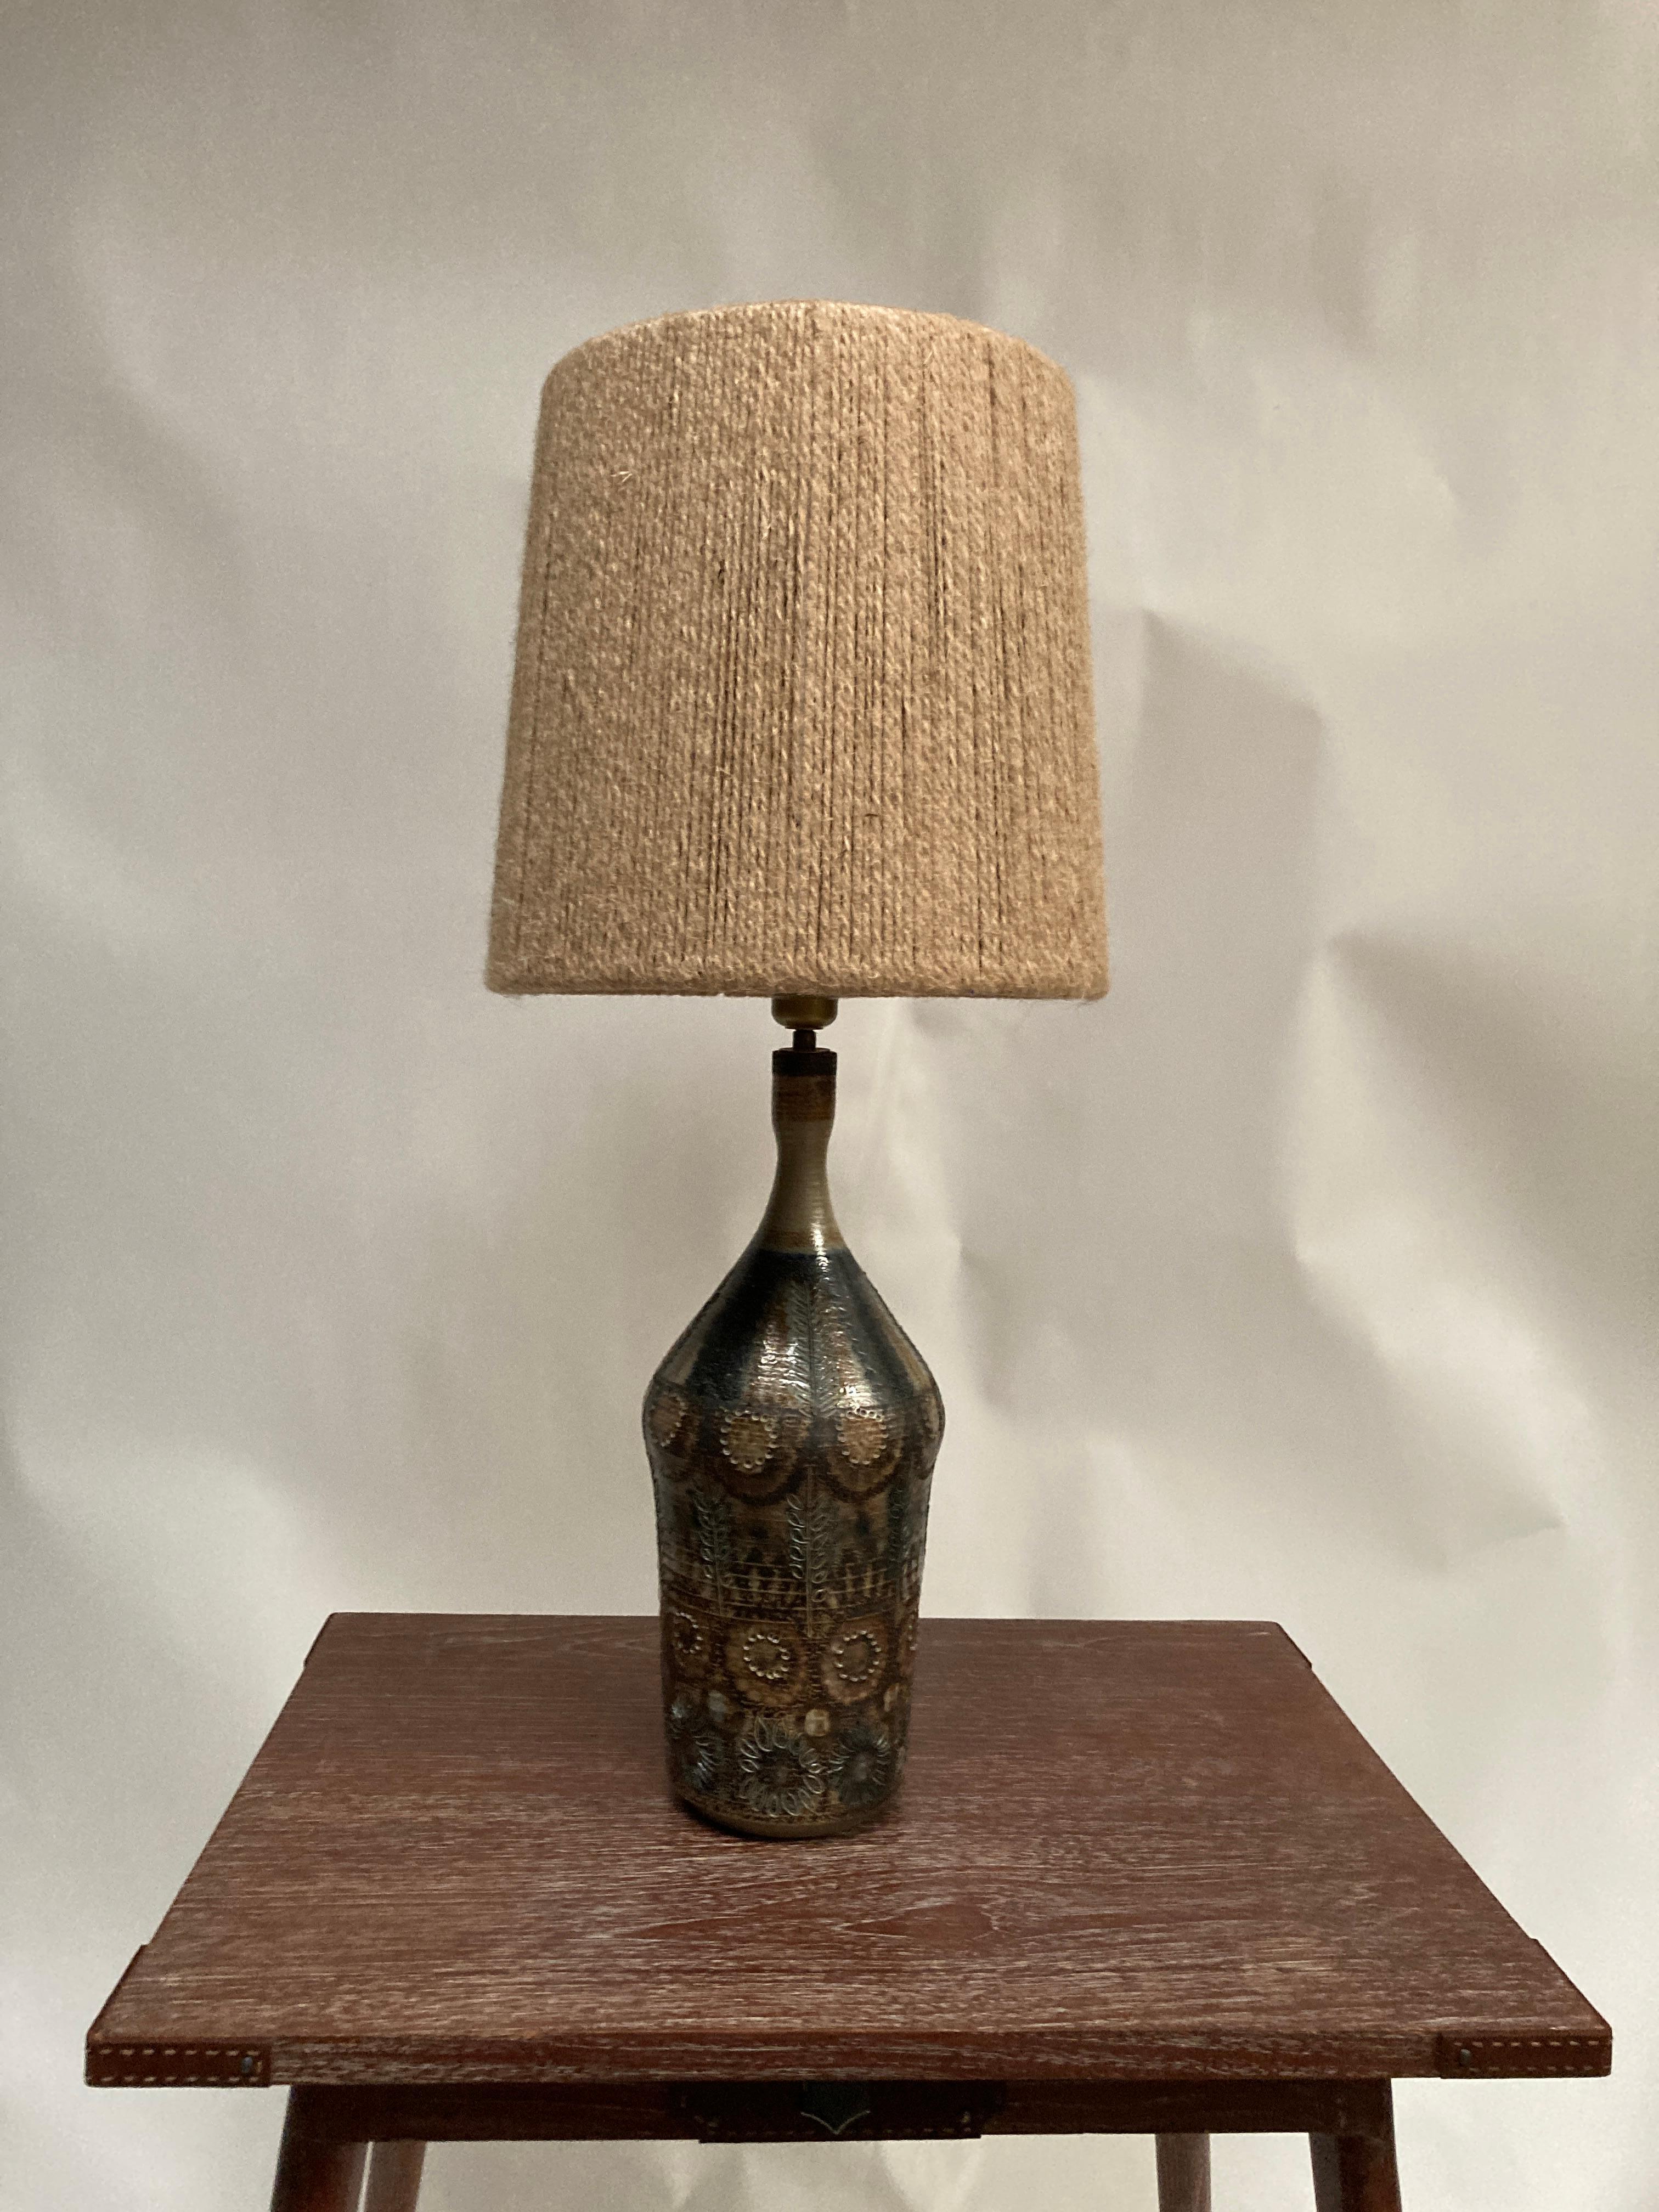 Einzigartige Studio-Keramiklampe 
Handgemacht 
Maße ohne Schirm angegeben
Kein Schatten enthalten